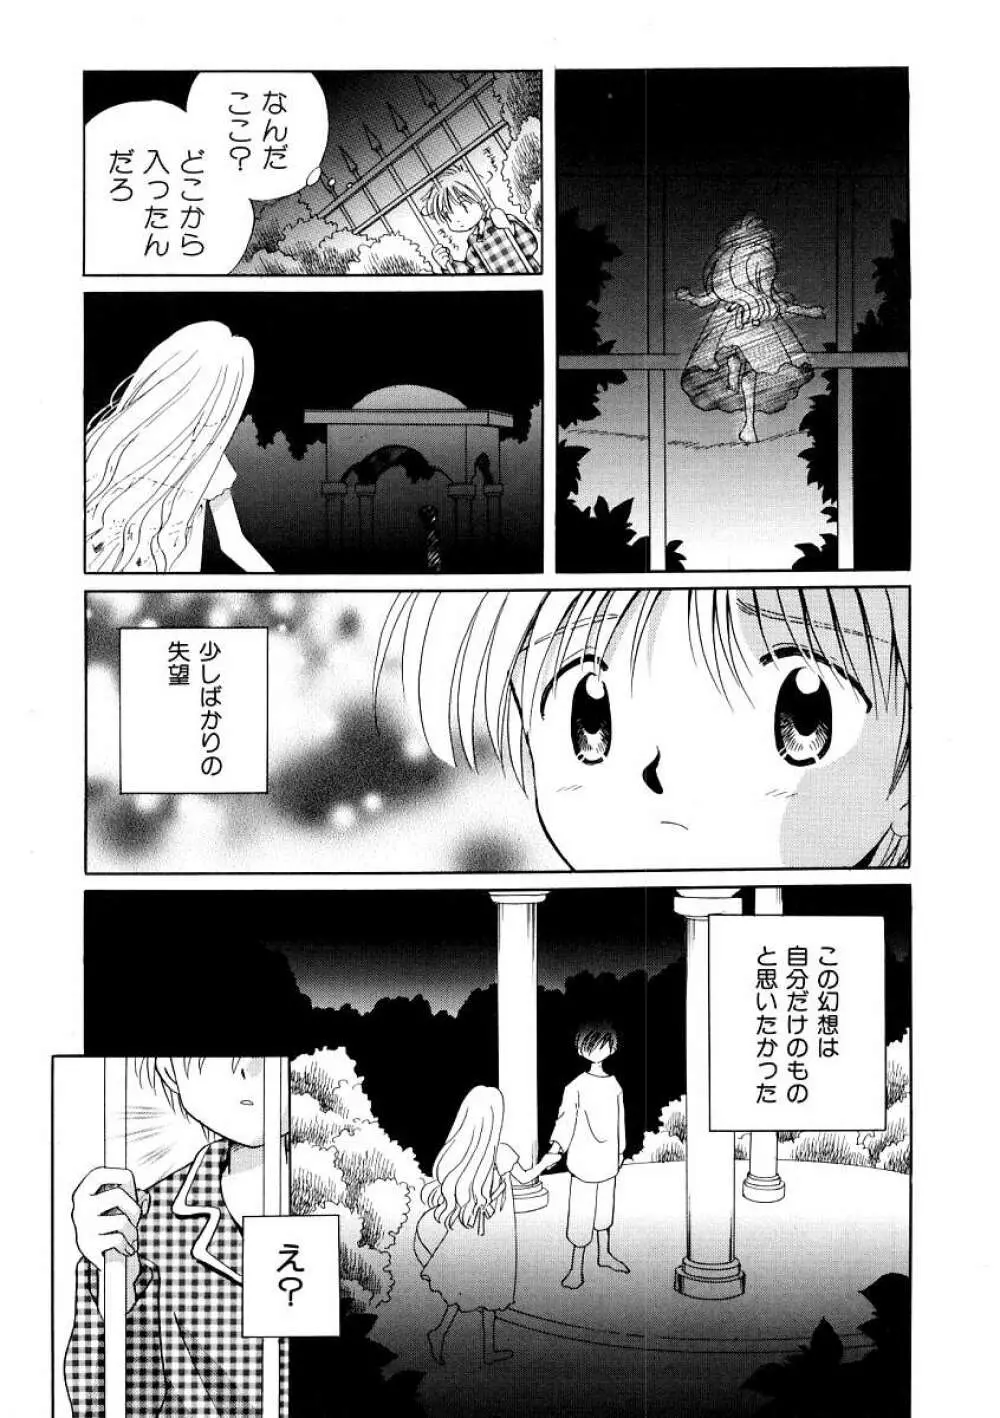 Hin-nyu v09 – Hin-nyu Keikaku 45ページ